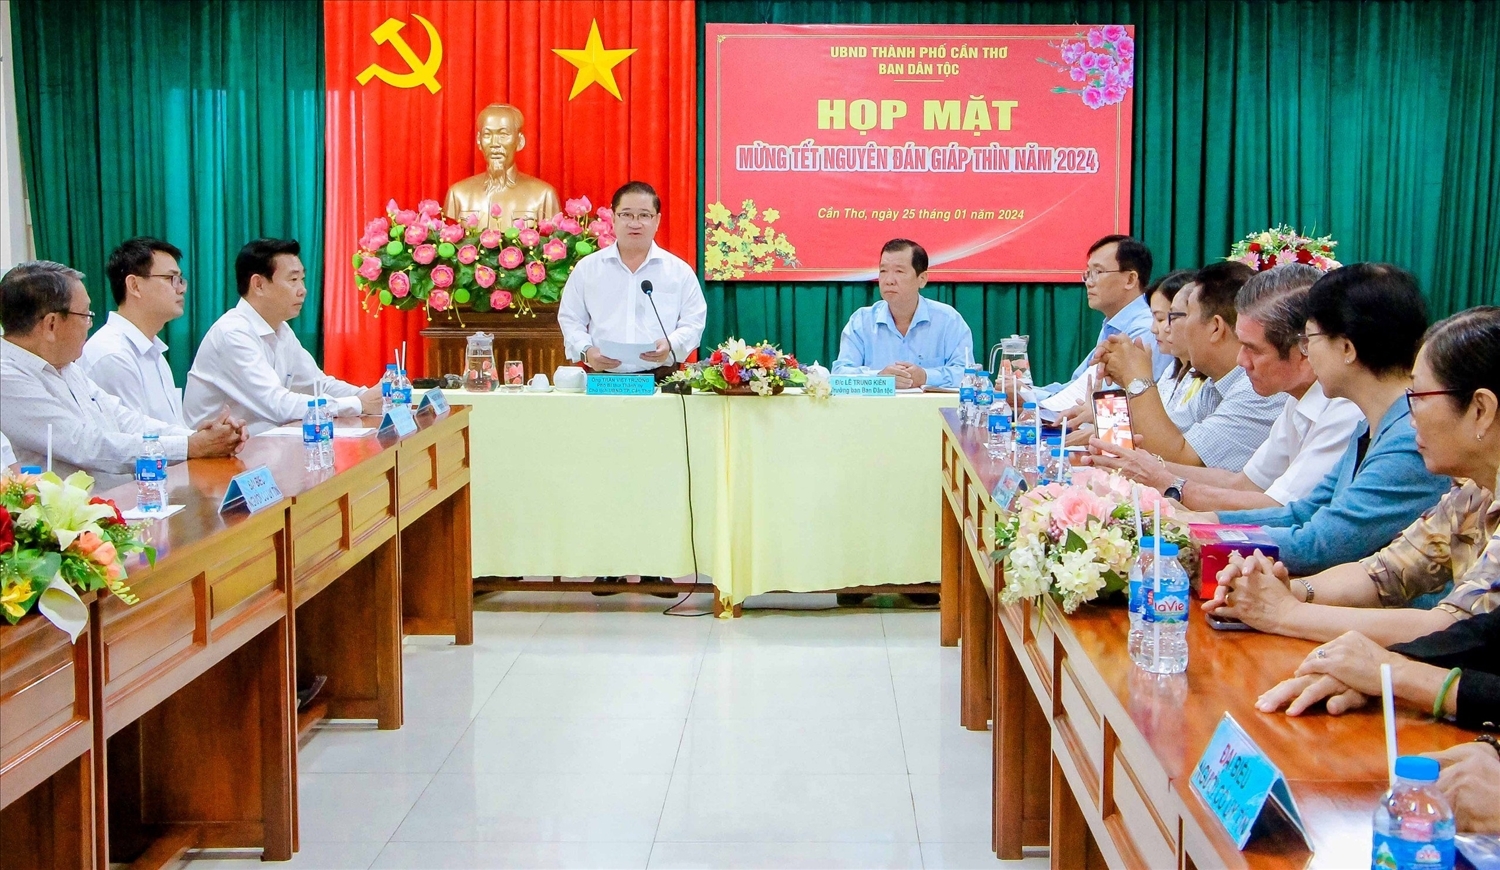 Phó Bí thư Thành ủy, Chủ tịch UBND TP. Cần Thơ Trần Việt Trường phát biểu tại buổi họp mặt